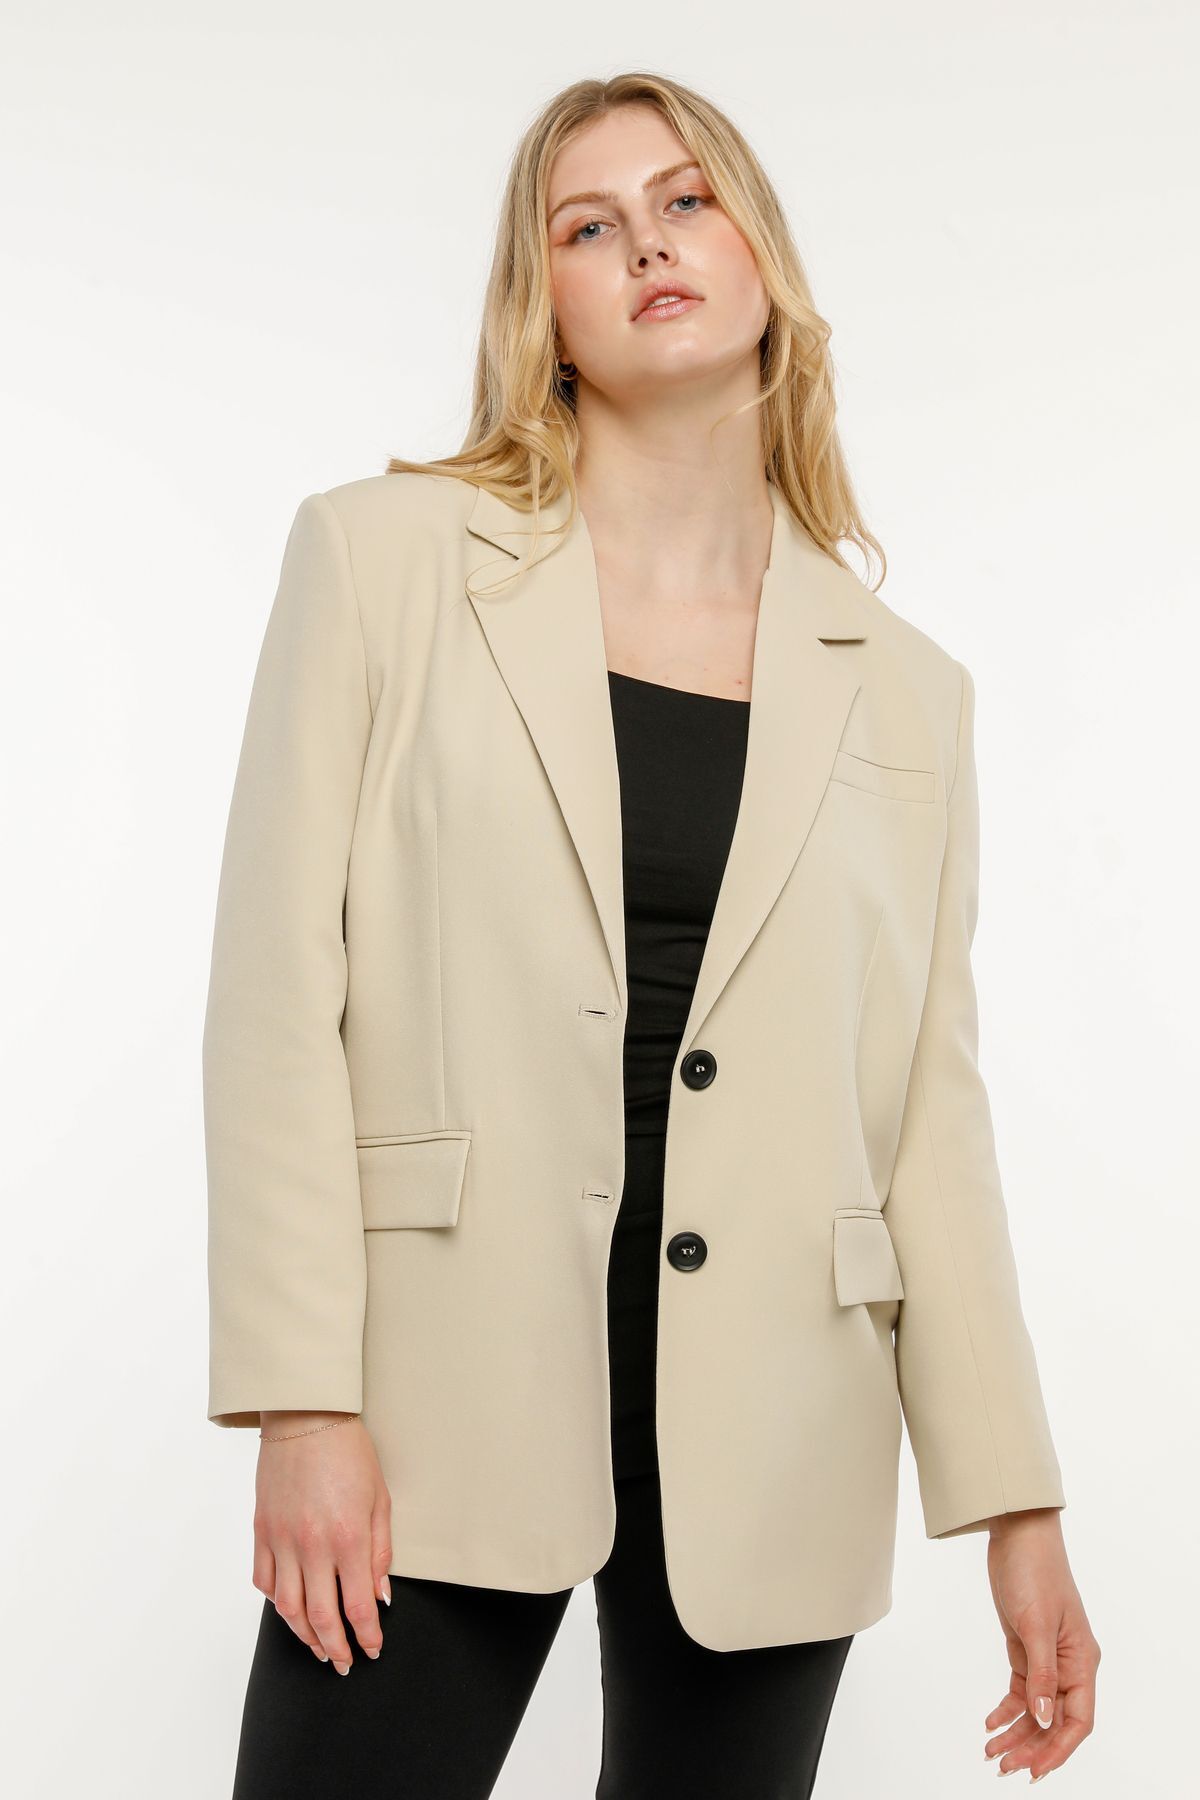 Bolivente Taş Rengi Kadın Düğmeli Oversize Blazer Ceket